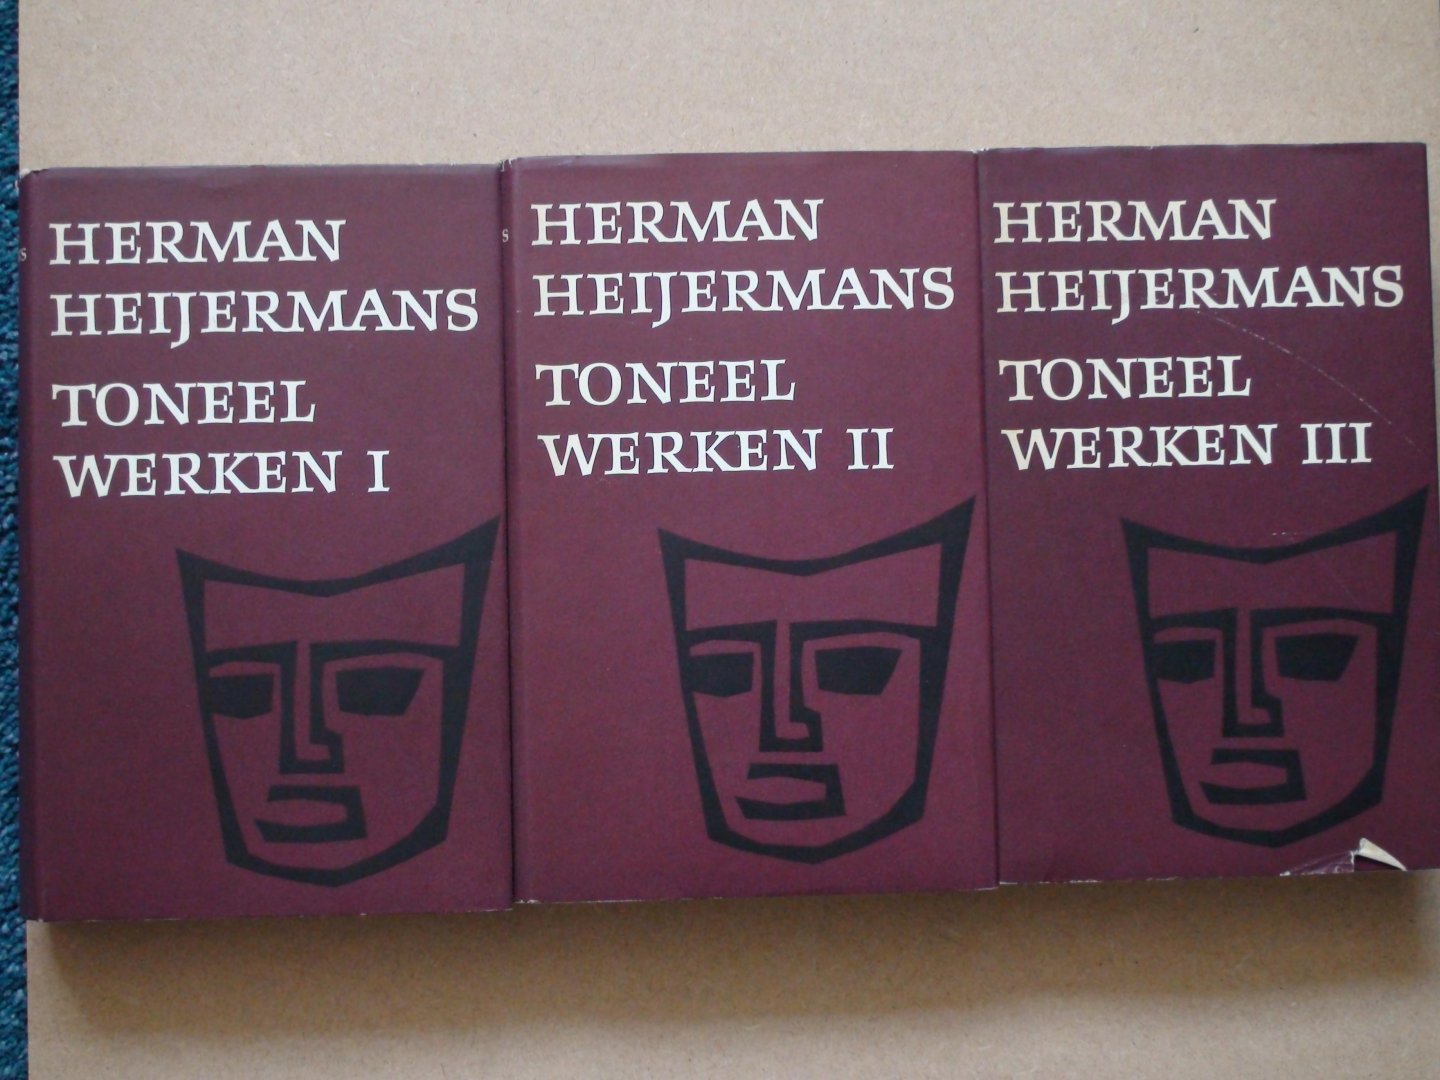 Heyermans, Herman - Toneelwerken I, II, III